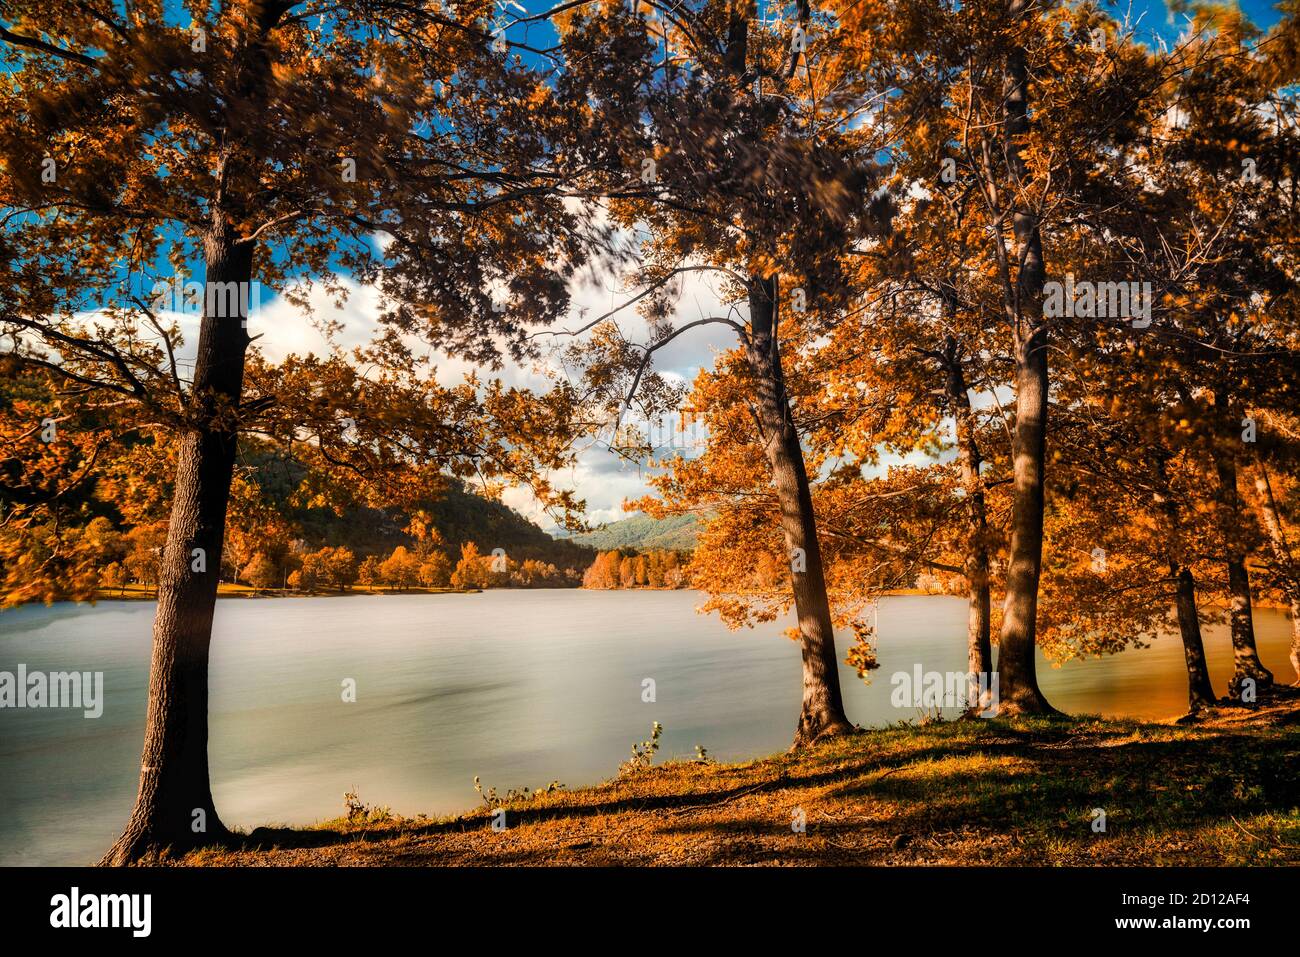 Couleurs d'automne dans le bois avec lac de Ghirla près de la ville de Varèse, exposition longue durée Banque D'Images